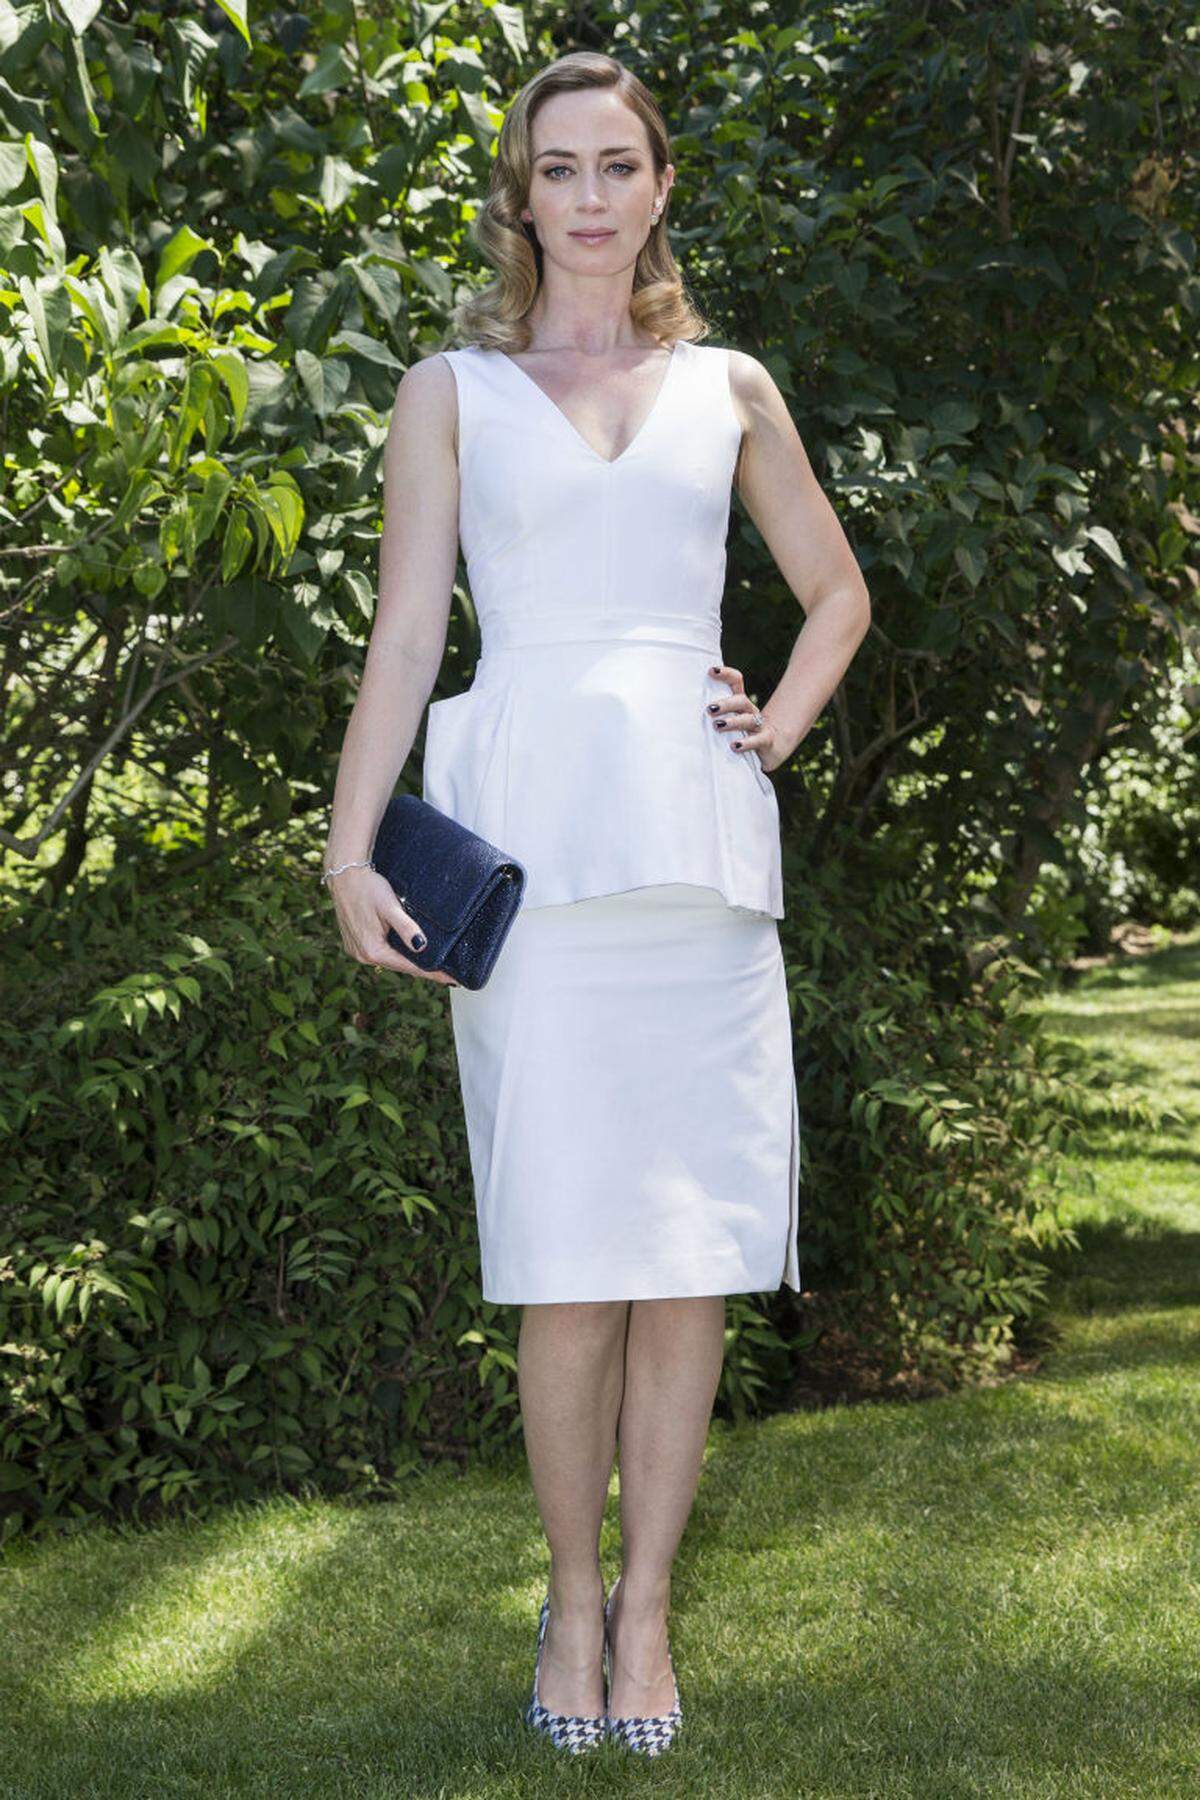 Die Schauspielerin Emily Blunt glänzte in sommerlichem Weiß - ebenfalls bei Dior.